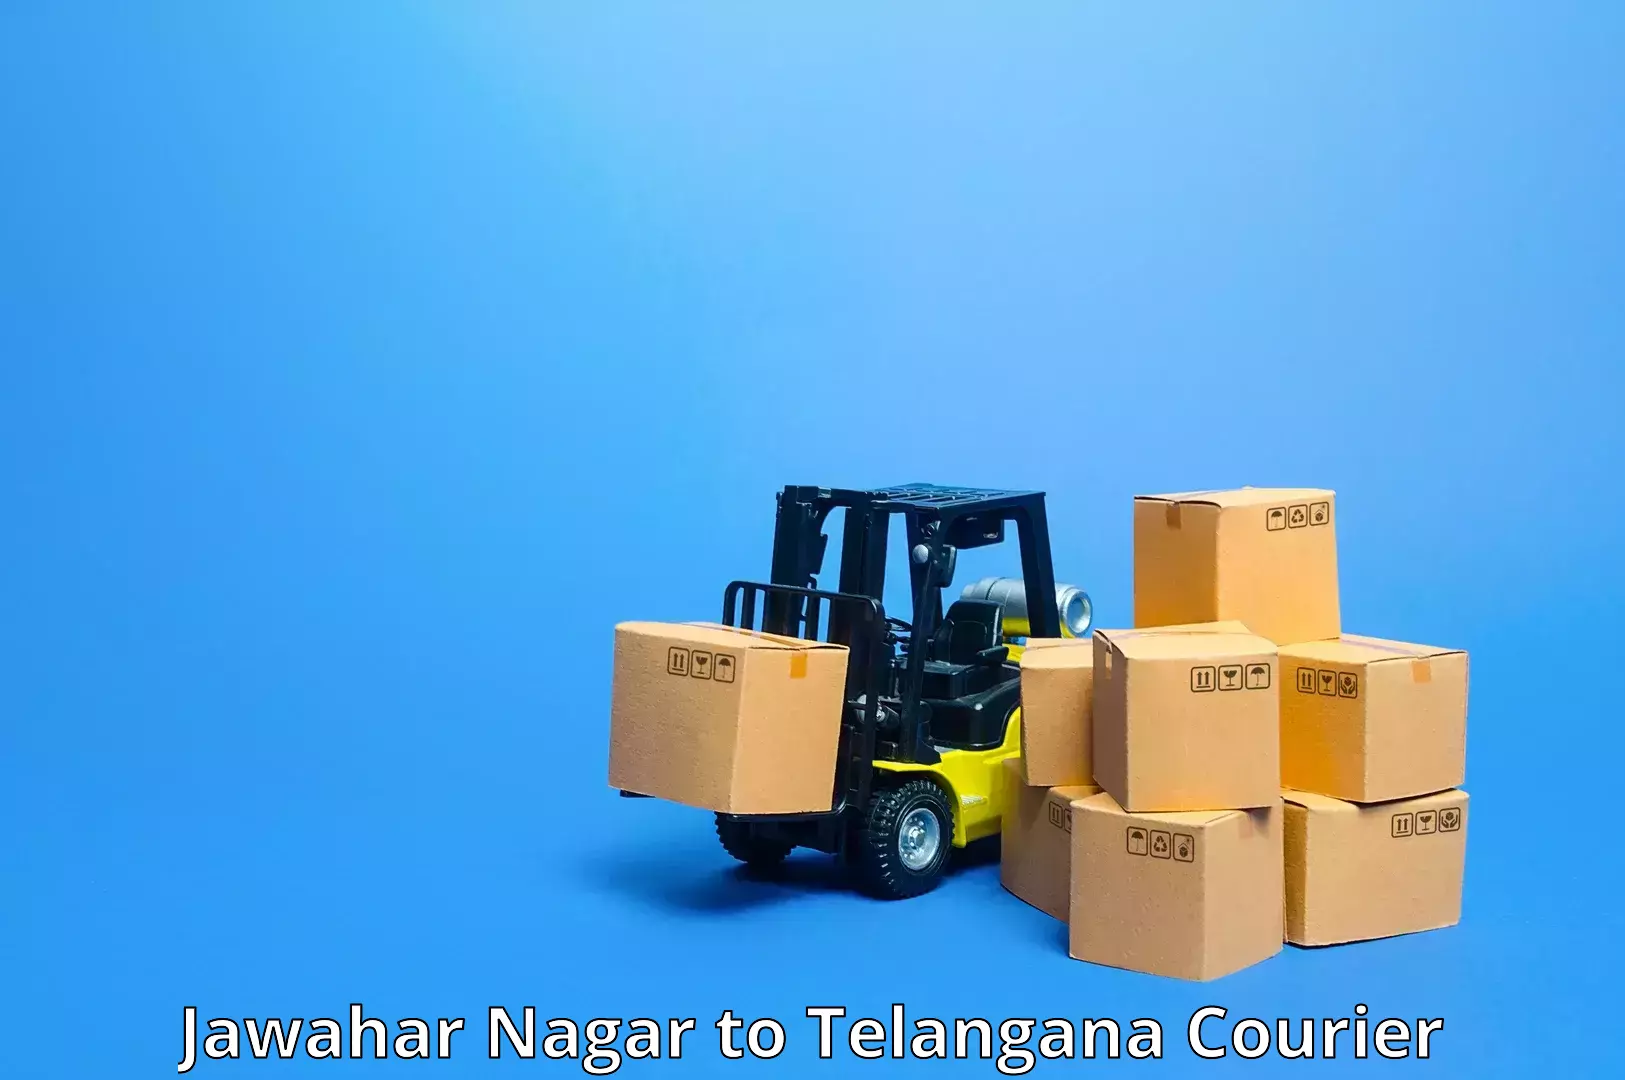 High-capacity shipping options Jawahar Nagar to Mahabubnagar